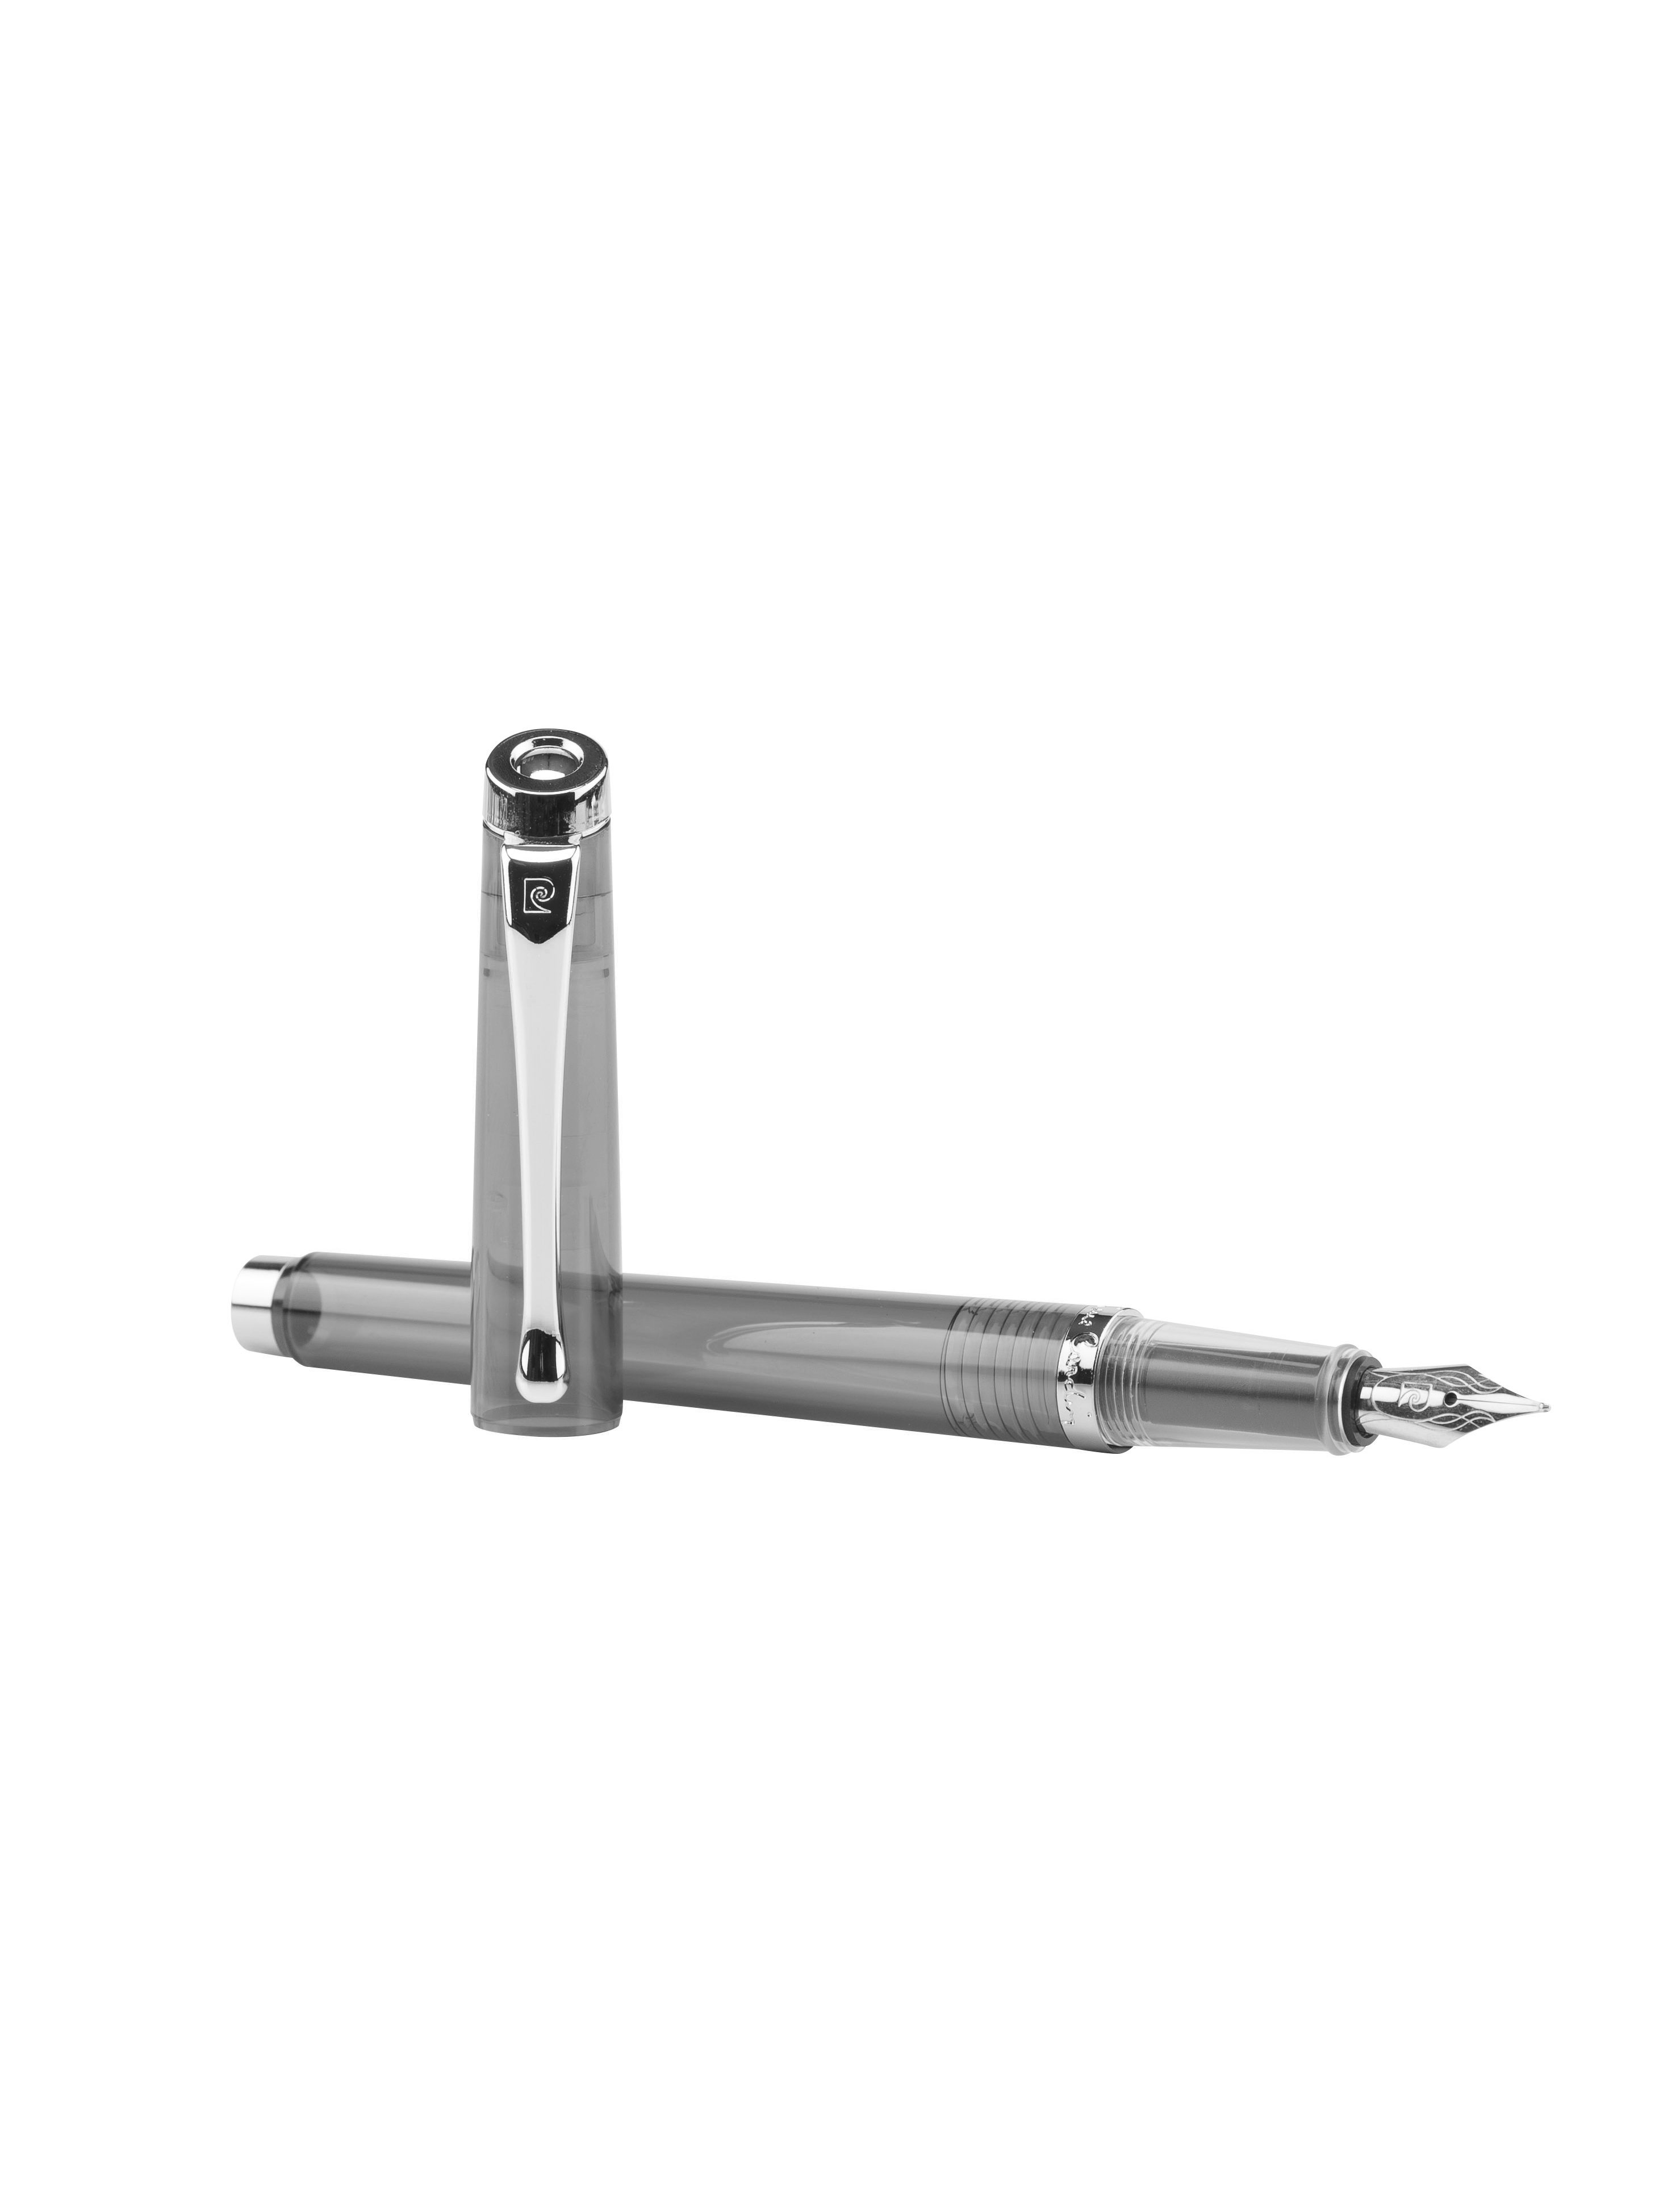 Набор WE-SHARE: перьевая ручка + сменные насадки + конвертер + чернила PIERRE CARDIN PCW-001-1